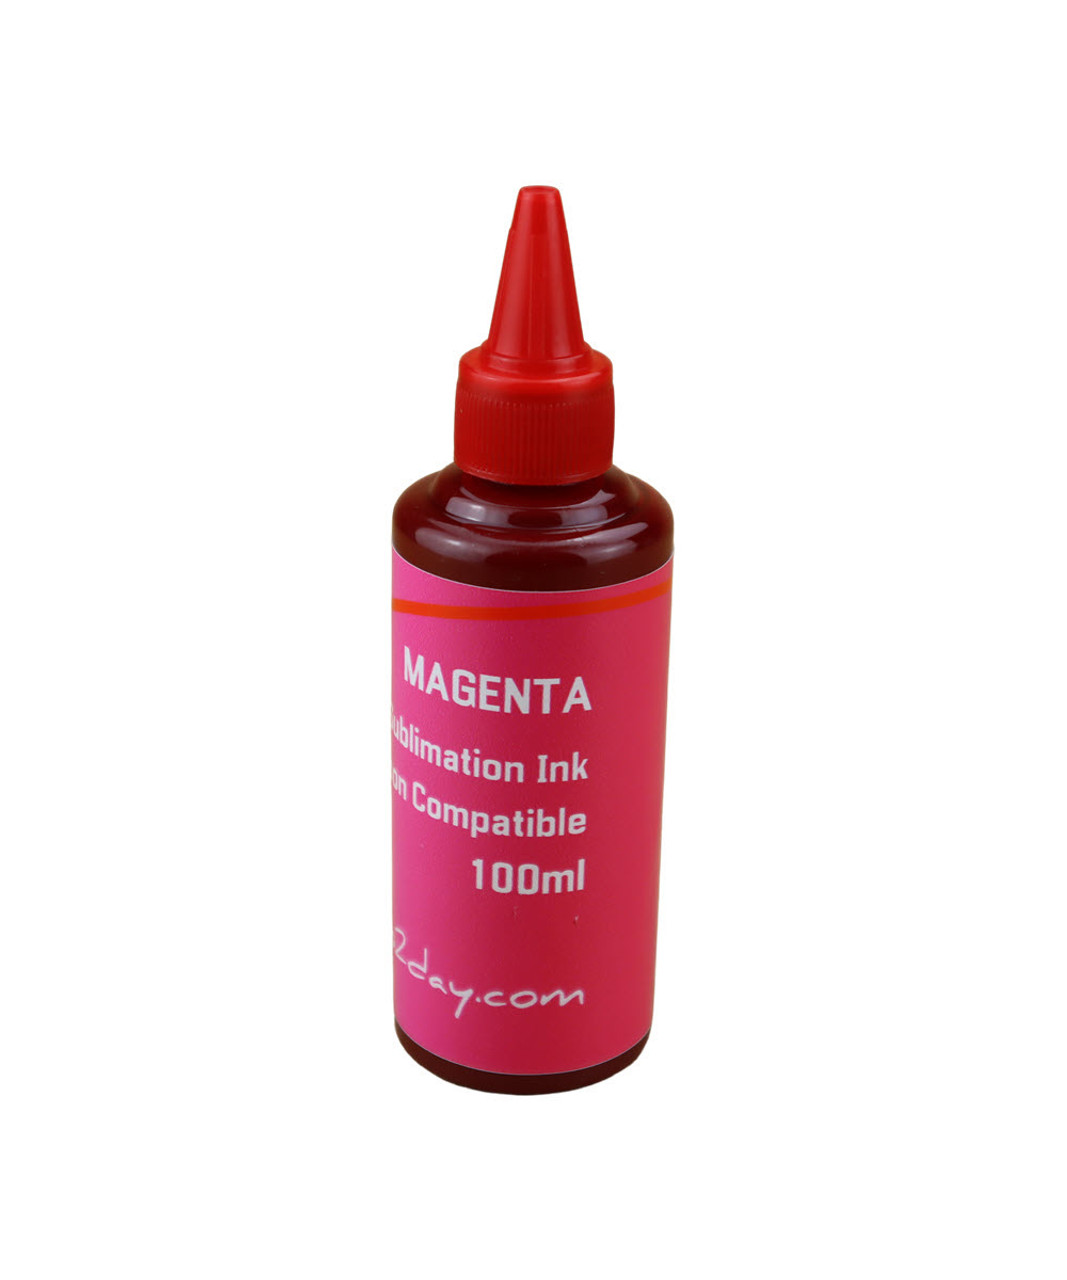 Magenta 100ml Bottle Dye Sublimation Ink for Epson WorkForce WF-7110, WorkForce WF-7610, WorkForce WF-7620 Printers